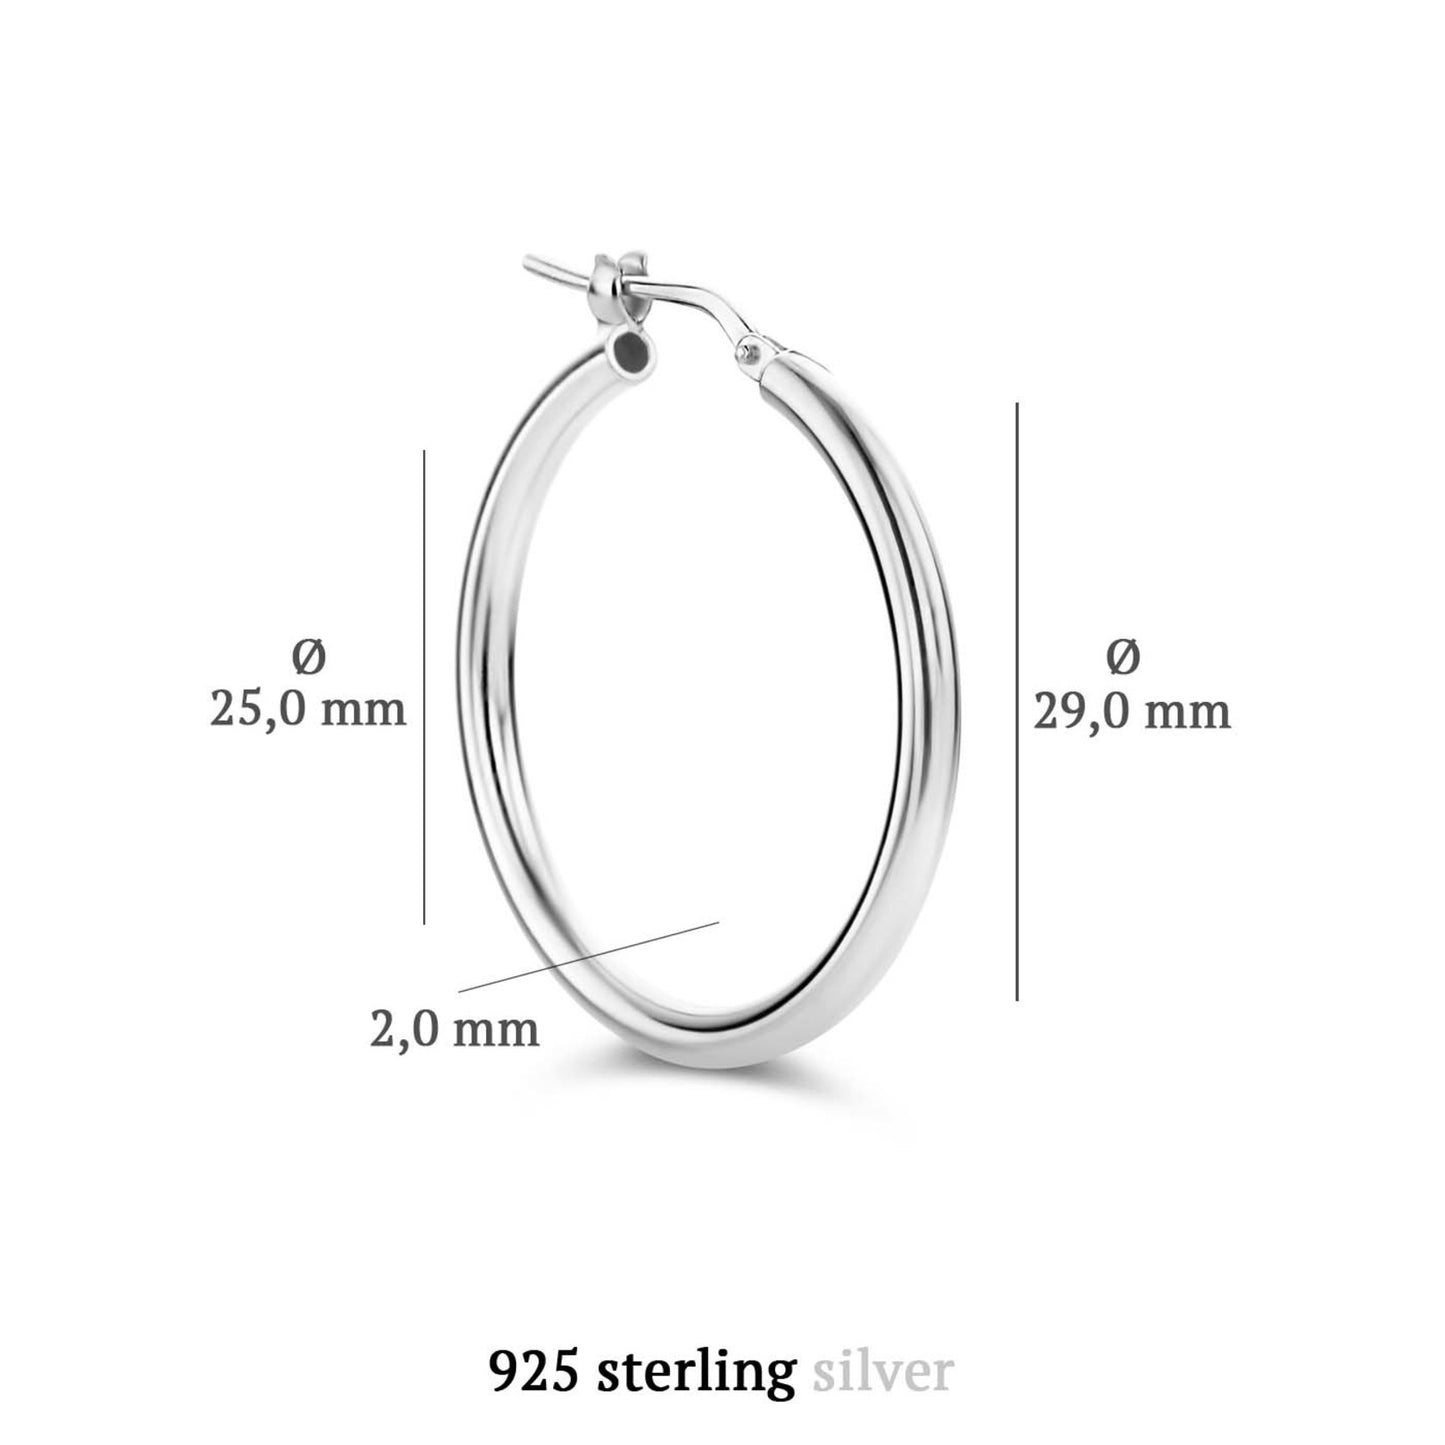 Sorprendimi 925 Sterling Silber Ohrring-Set